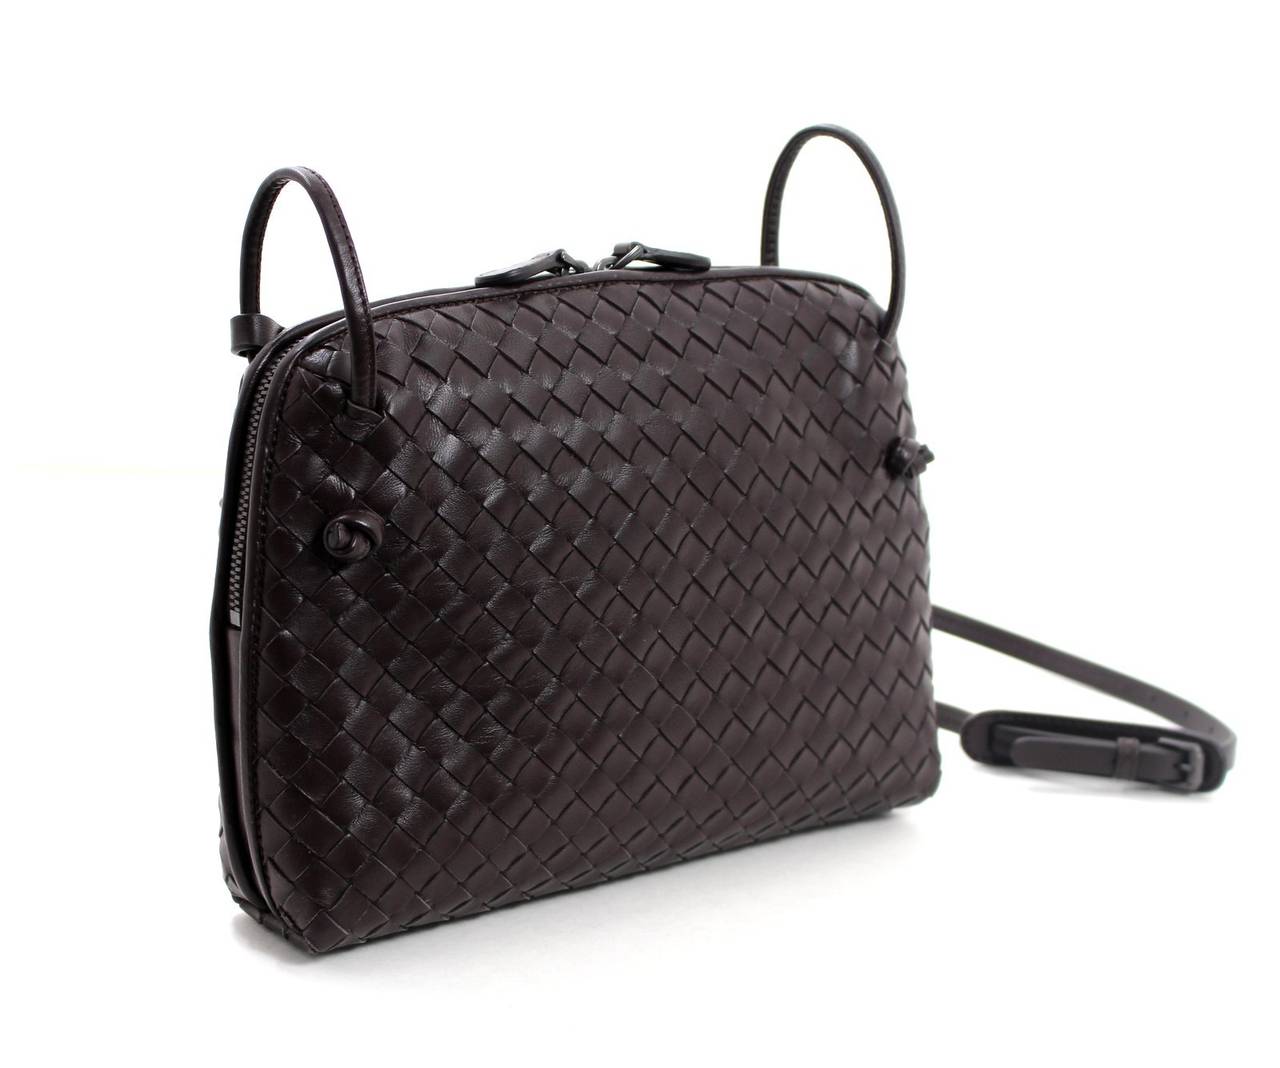 Bottega Veneta Ebano Woven Leather Small Crossbody Bag In New Condition In New York City & Hamptons, NY